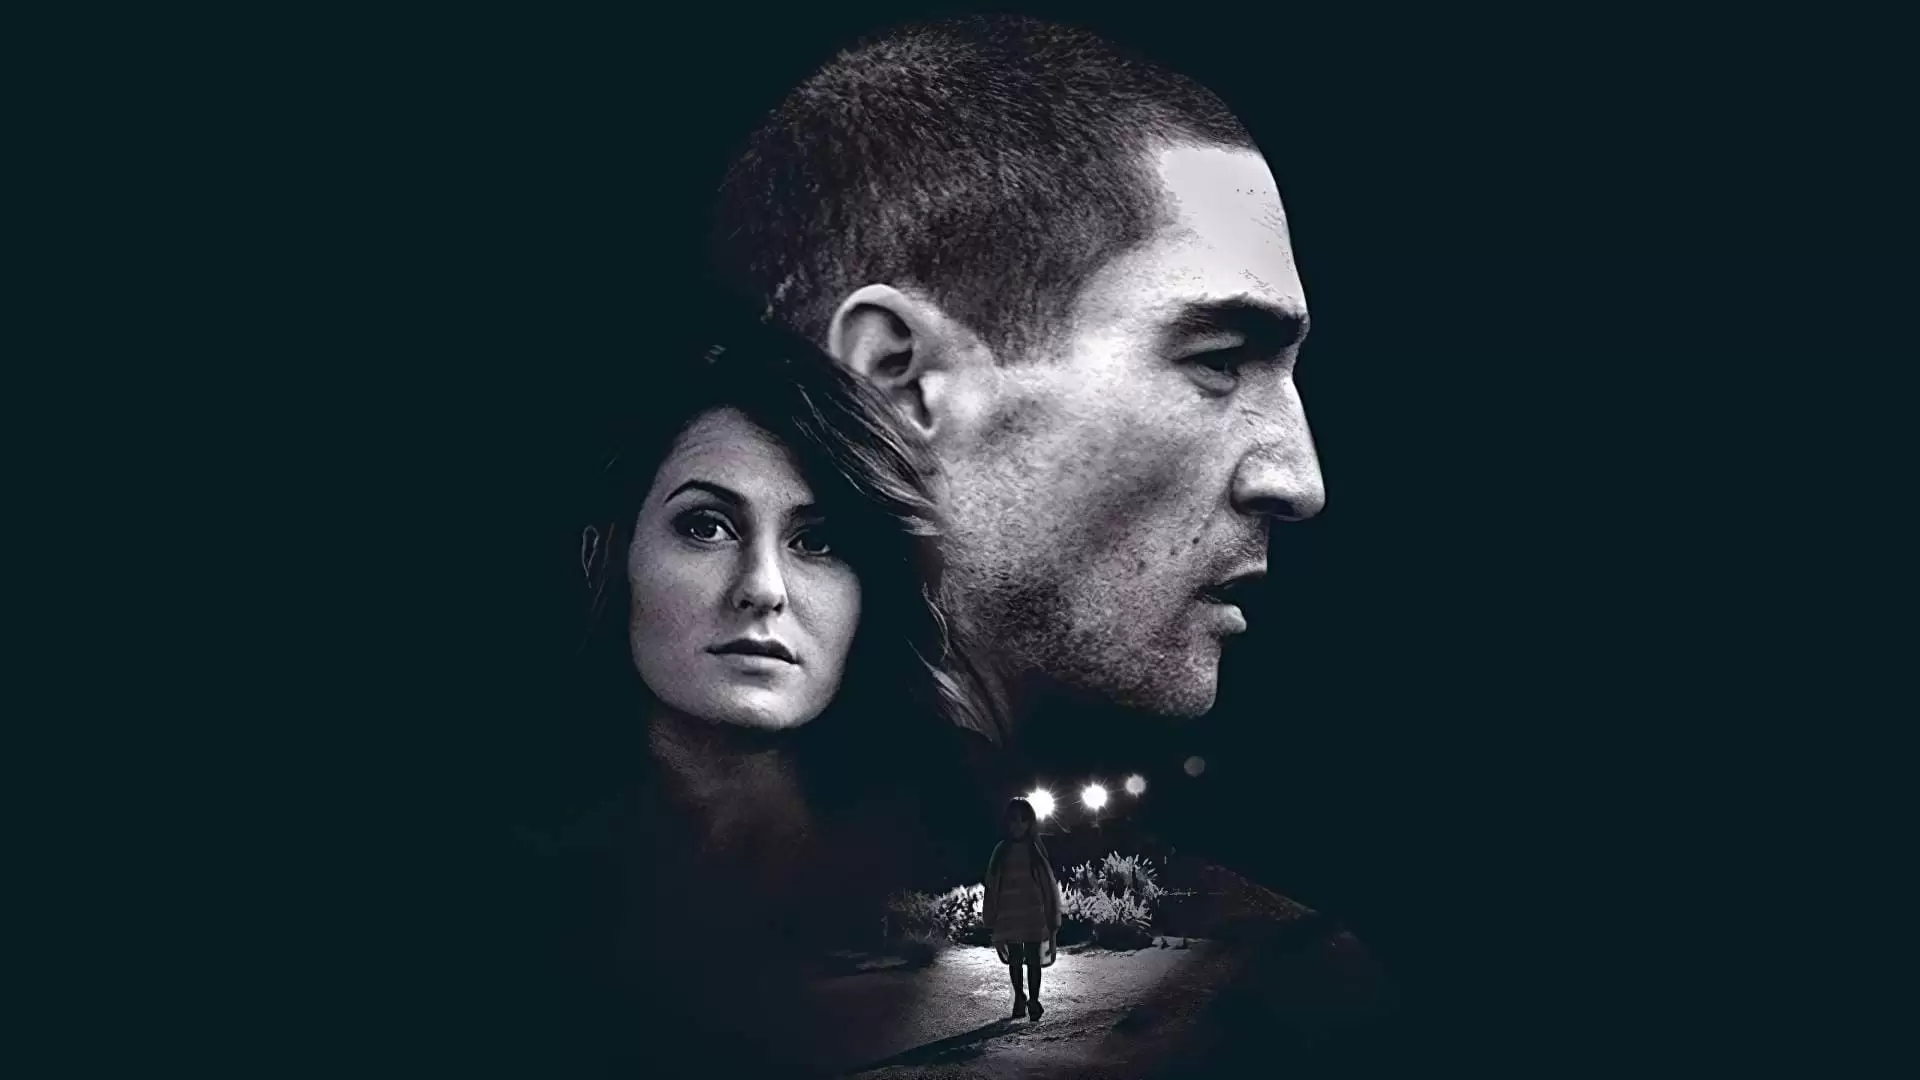 دانلود فیلم Abducted 2020 (ربوده شده) با زیرنویس فارسی و تماشای آنلاین